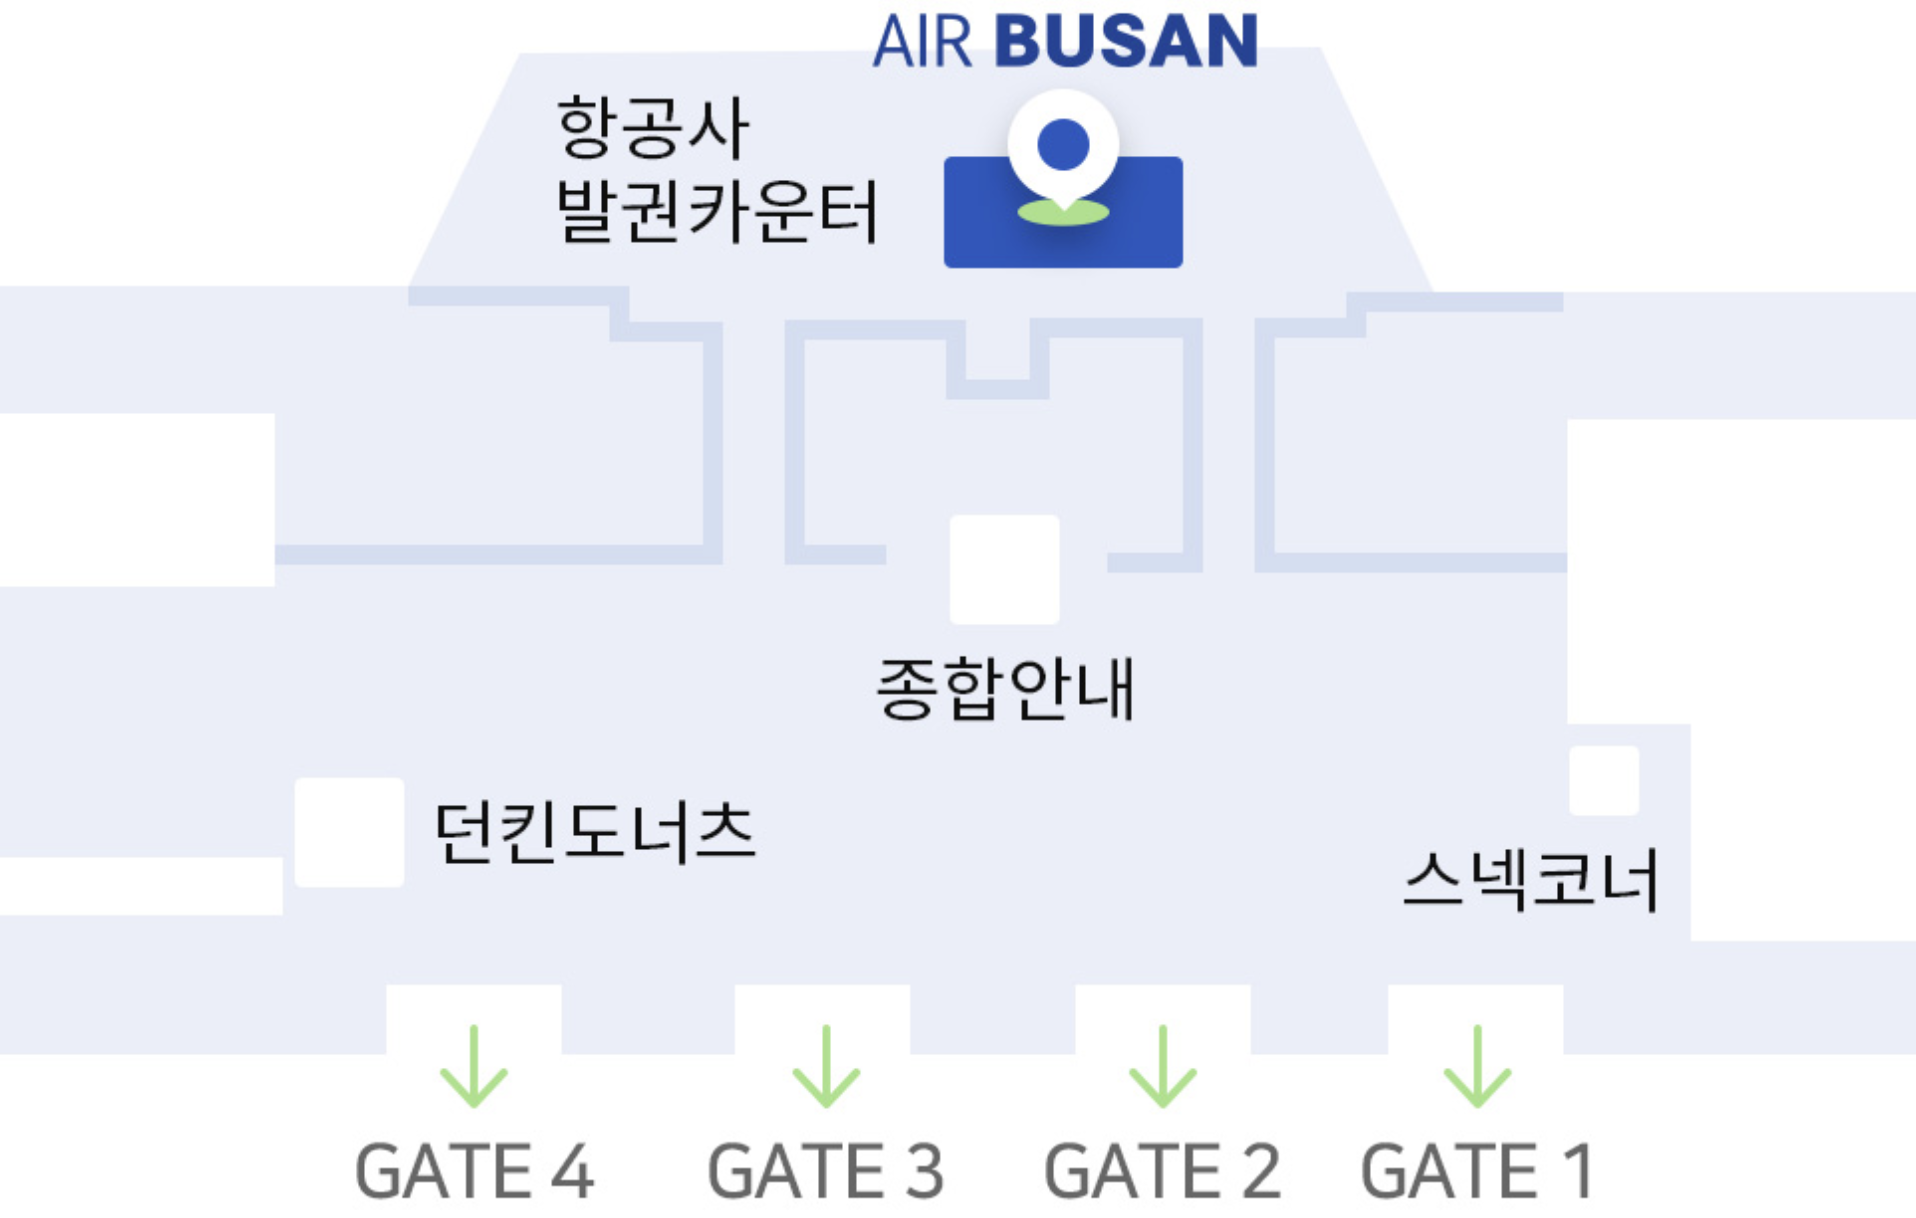 김포공항 에어부산 체크인 카운터